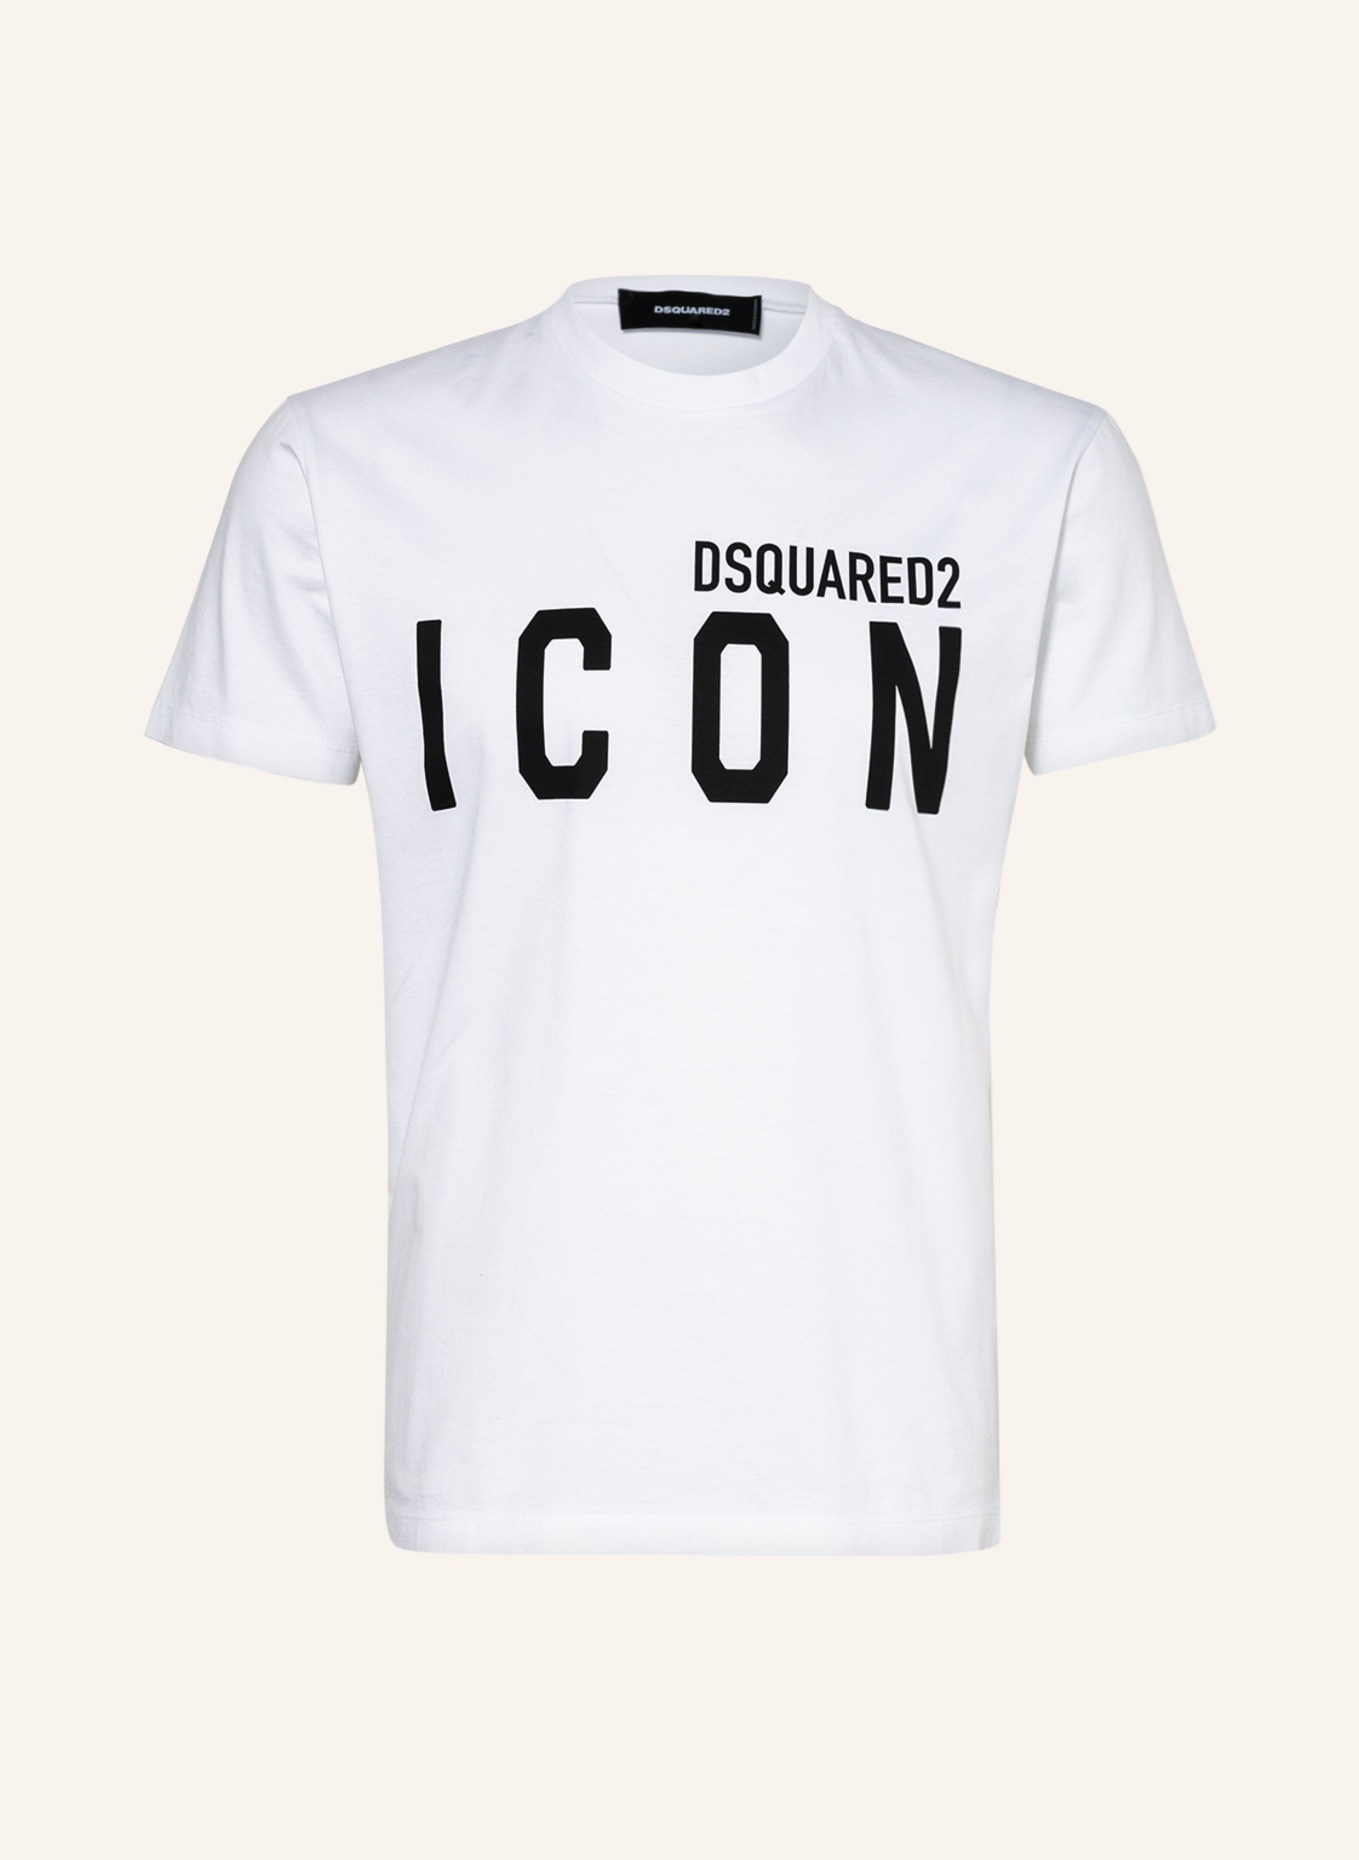 DSQUARED2 T-Shirt ICON, Farbe: WEISS/ SCHWARZ (Bild 1)